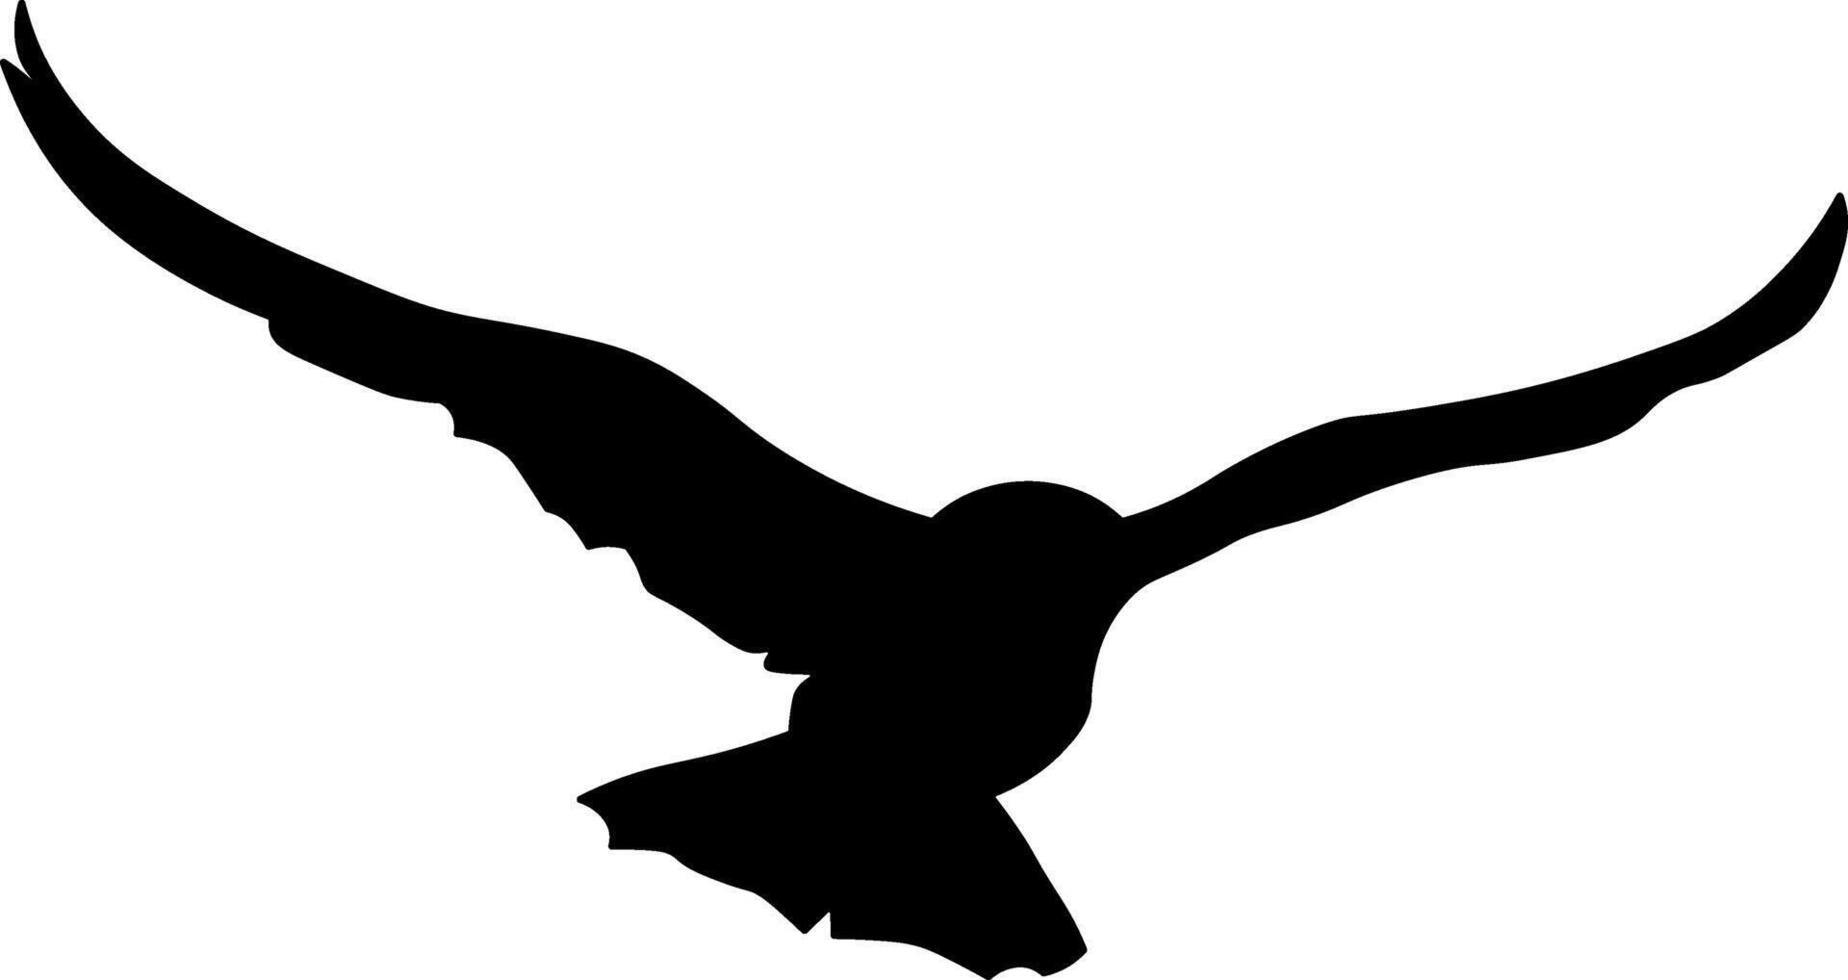 zwart silhouet van een vogel zonder achtergrond vector